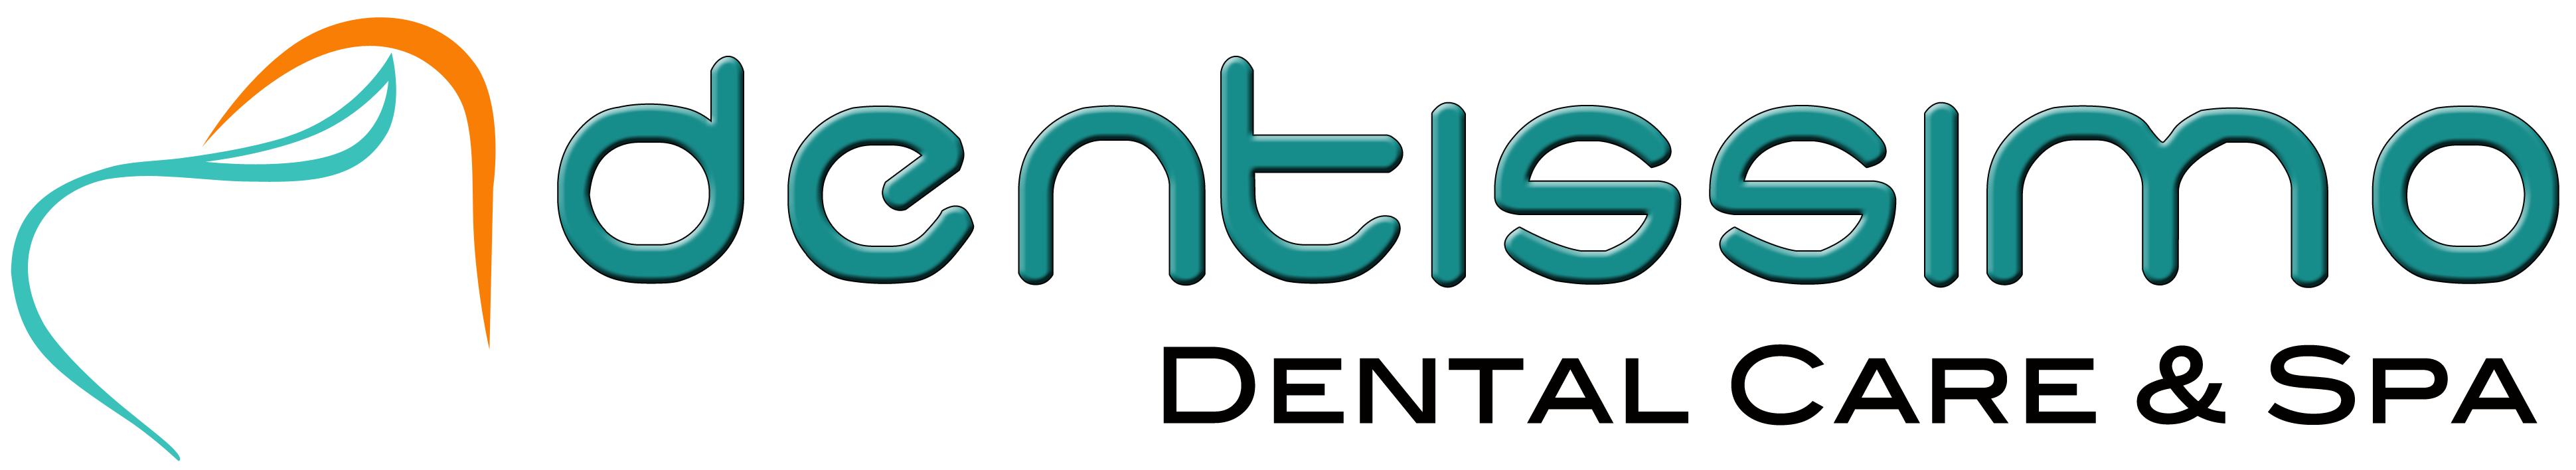 Dentissimo Dental Care & Spa|Hospitals|Medical Services